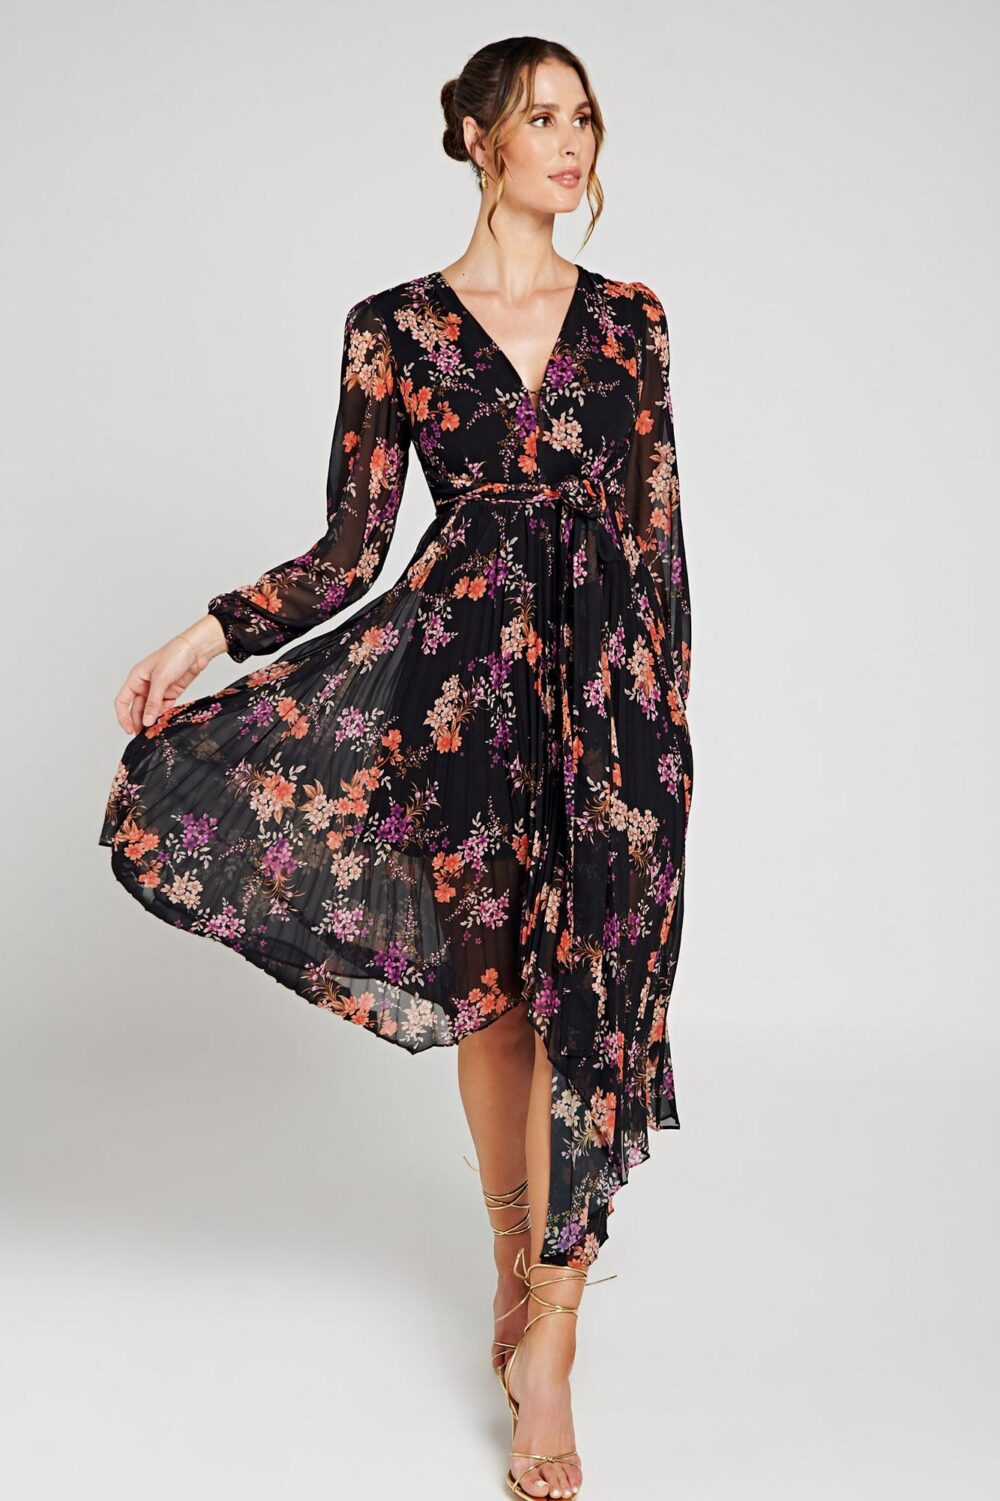 Ladies Dress Colour is Maeve Floral Print